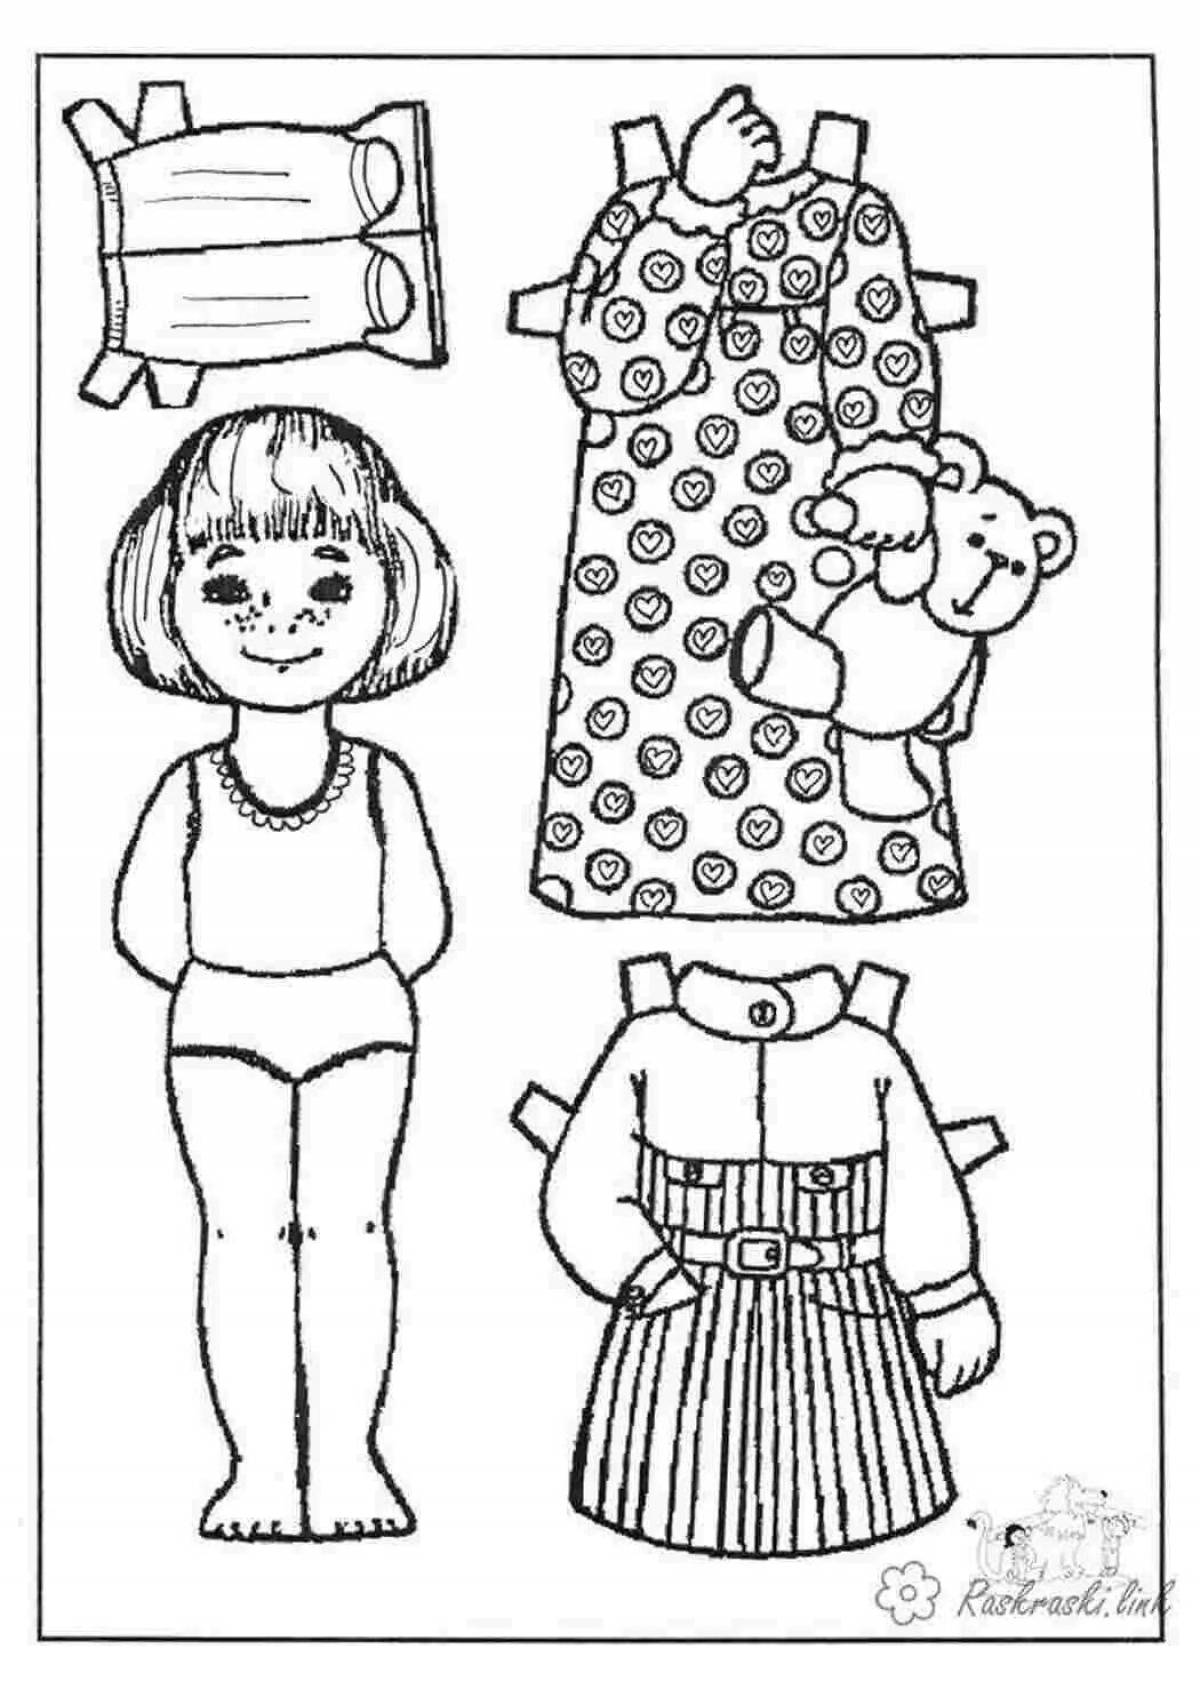 Joyful coloring doll in a dress